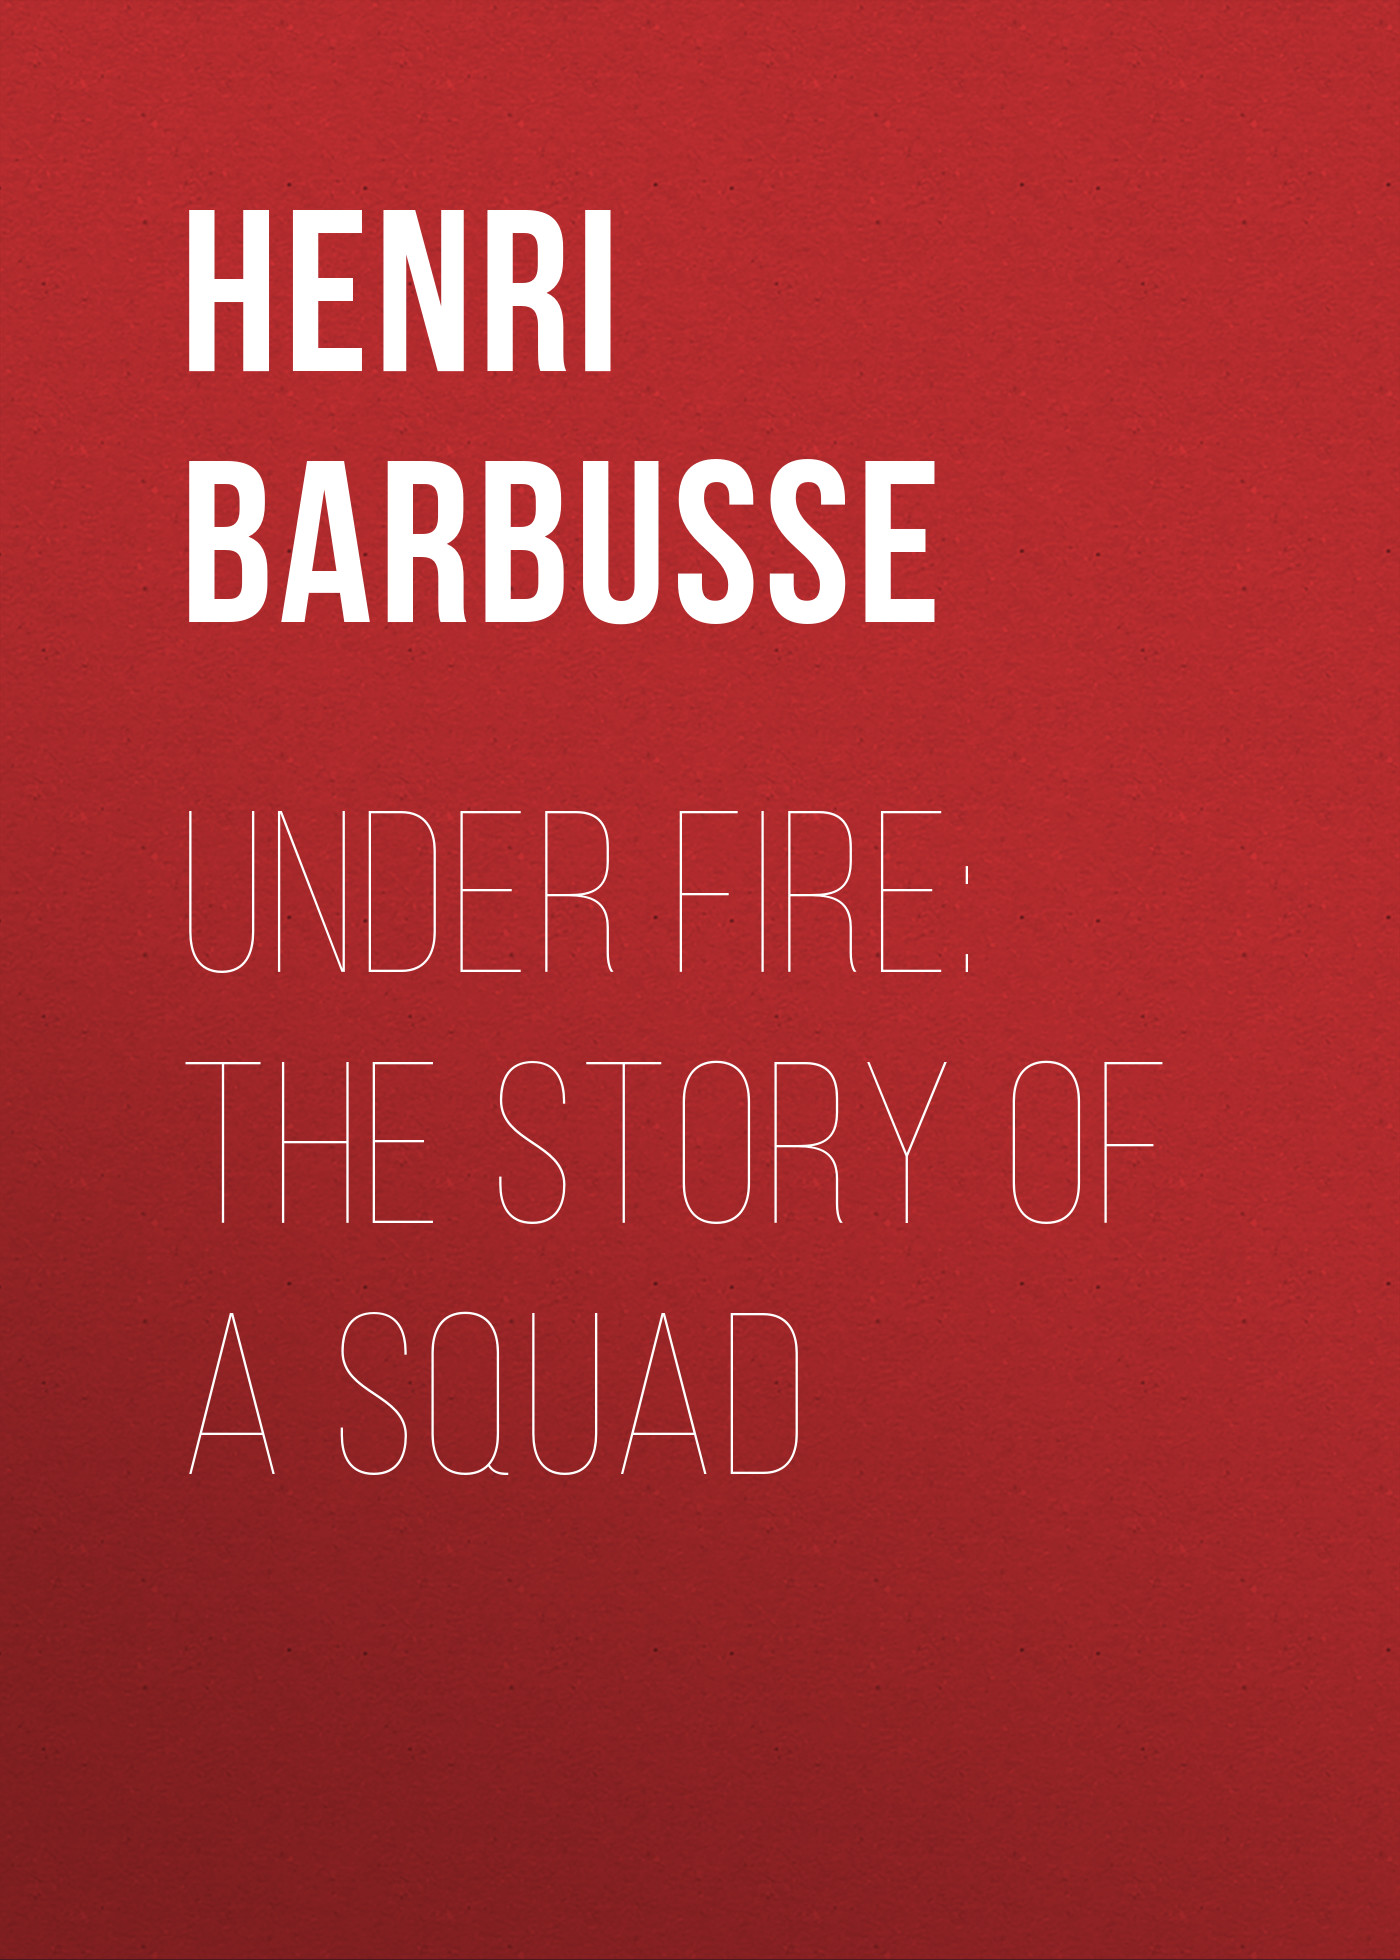 Книга Under Fire: The Story of a Squad из серии , созданная Henri Barbusse, написана в жанре Историческая фантастика, Зарубежная старинная литература, Зарубежная классика, Исторические приключения. Стоимость электронной книги Under Fire: The Story of a Squad с идентификатором 36362326 составляет 0 руб.